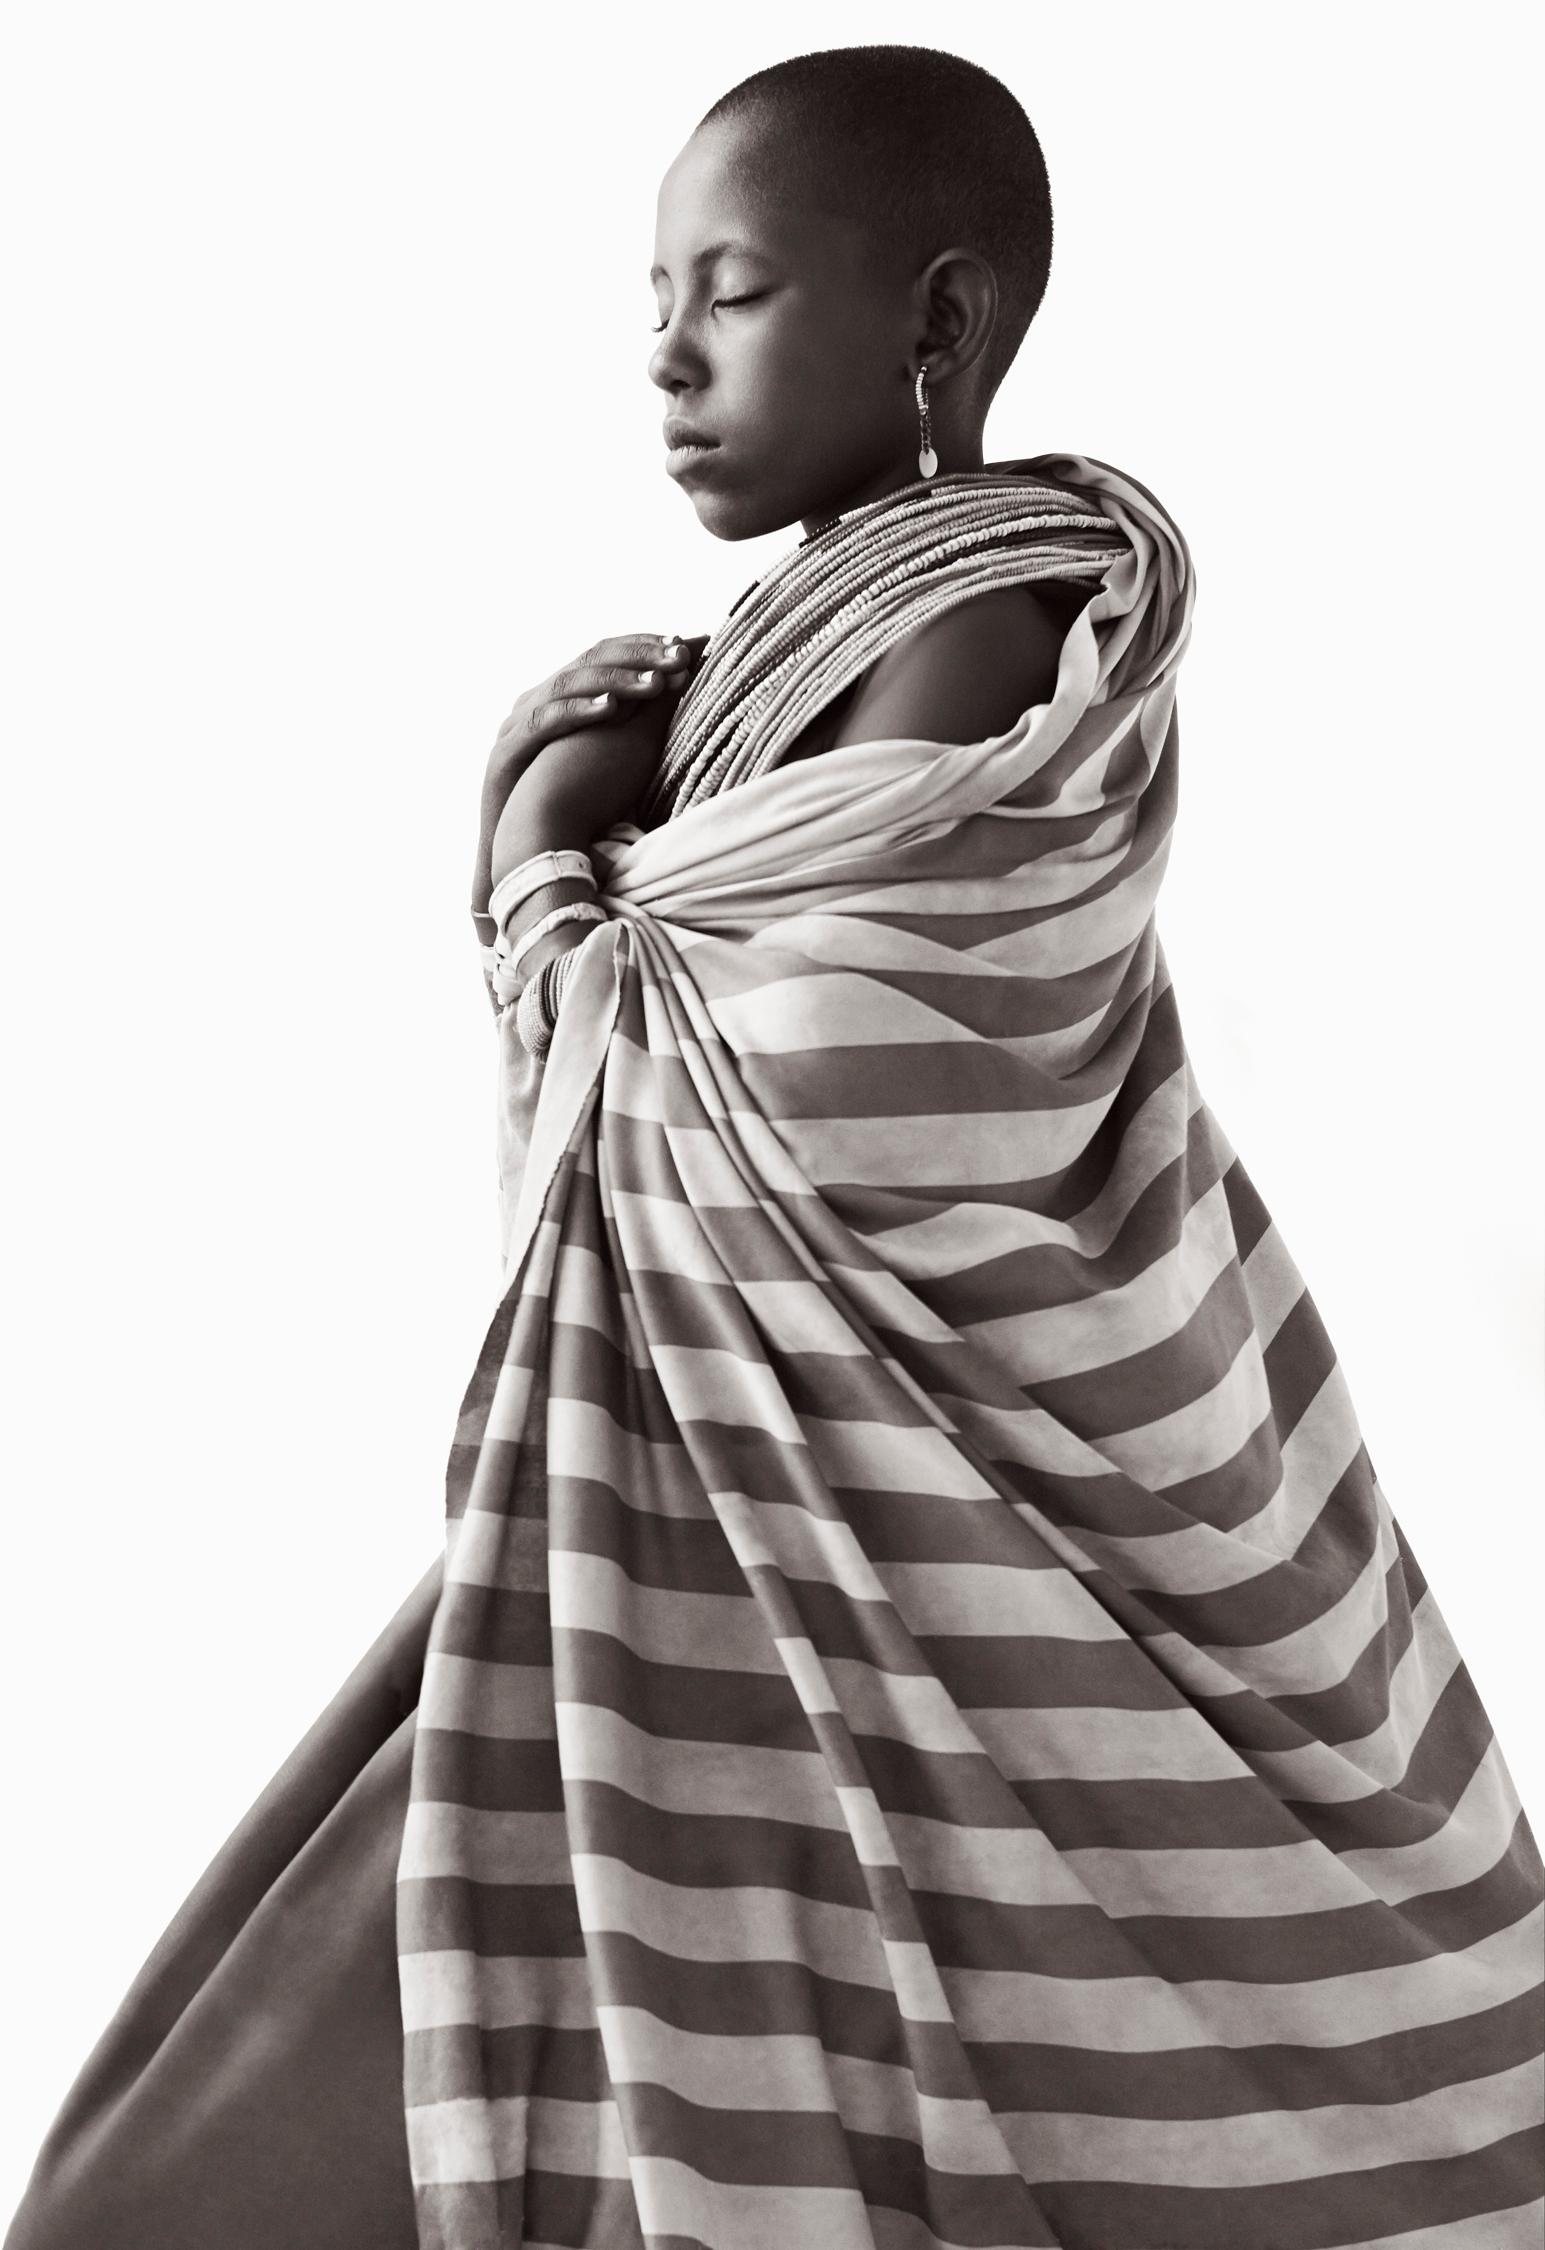 Drew Doggett Black and White Photograph – Adato, eine junge Frau aus Rendille, ist eine Vision von Ruhe und Ruhe.